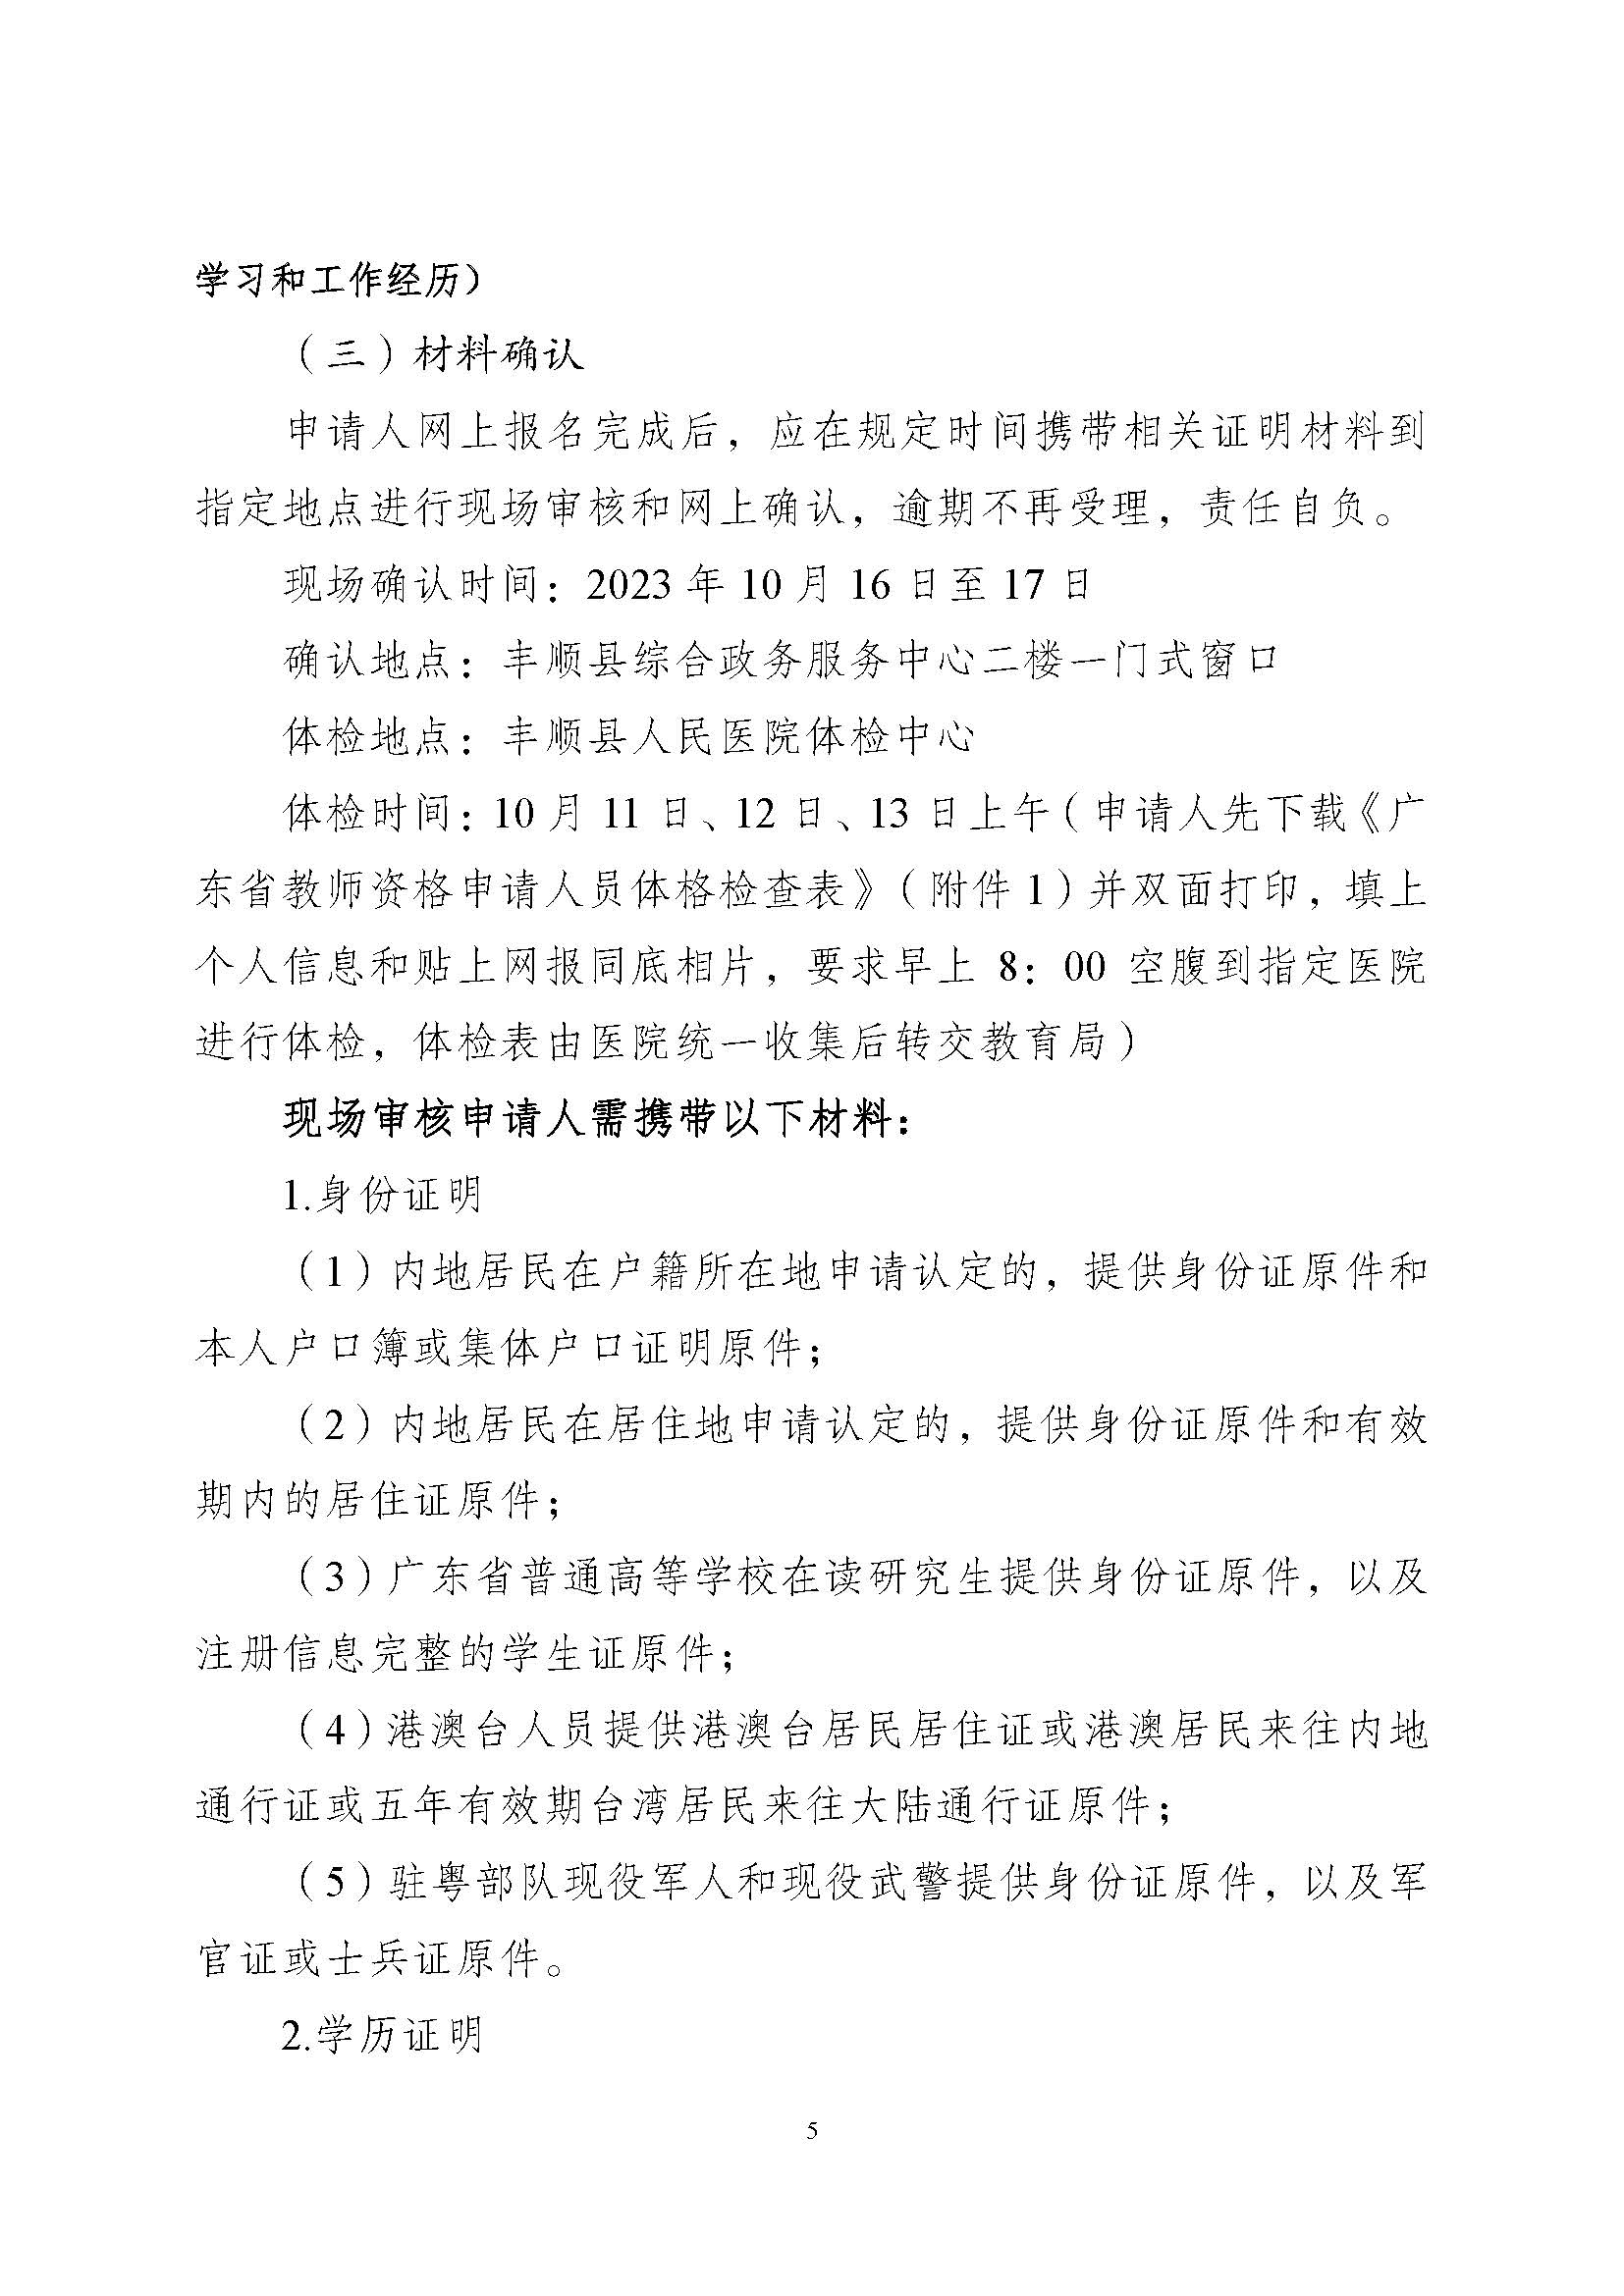 丰顺县2023年下半年中小学教师资格认定公告_页面_5.jpg